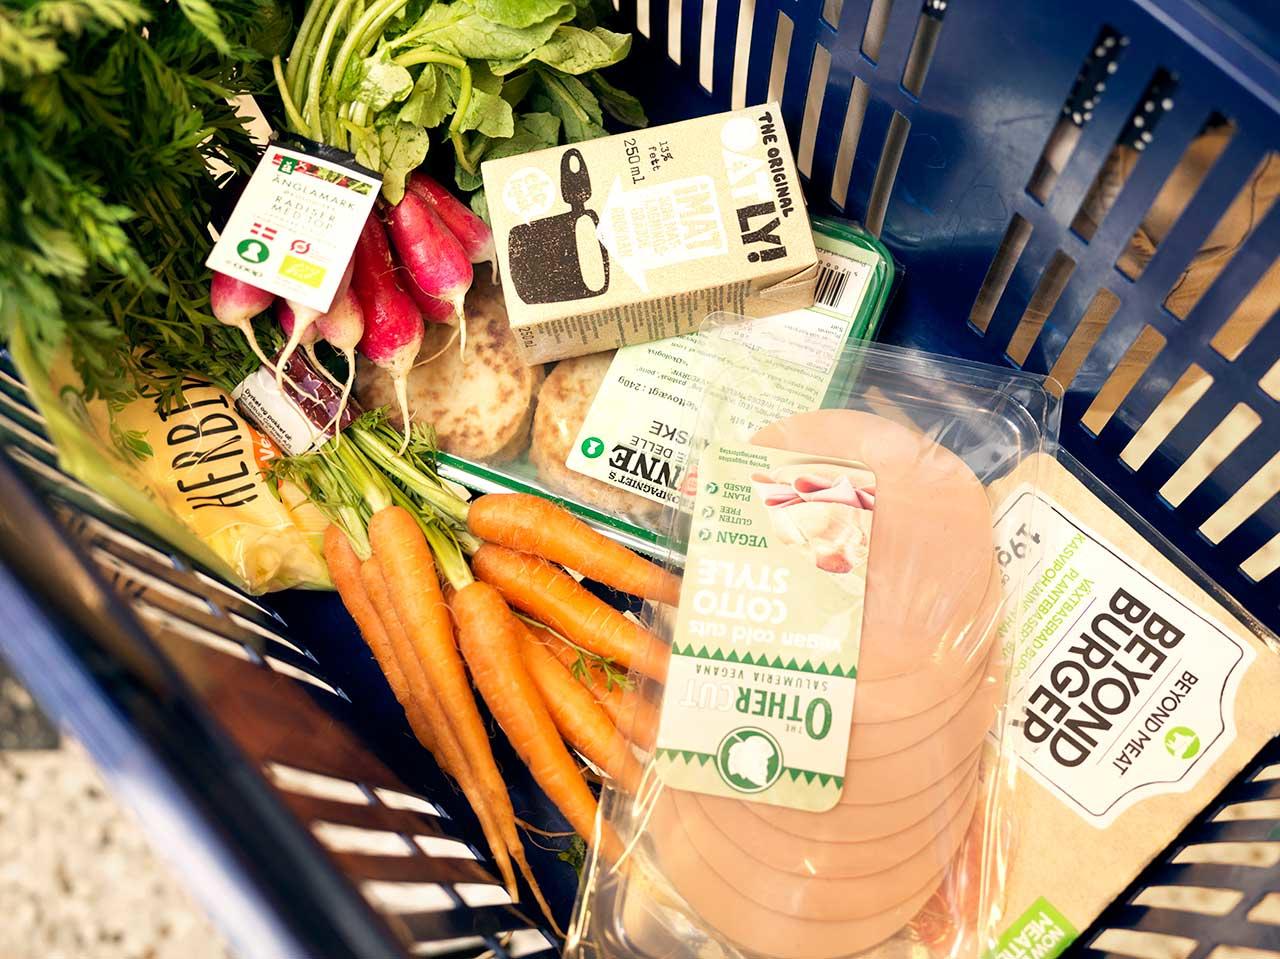 Irma-indkøbskurv med vegetariske og veganske varer. Foto: Pernille Ringsing